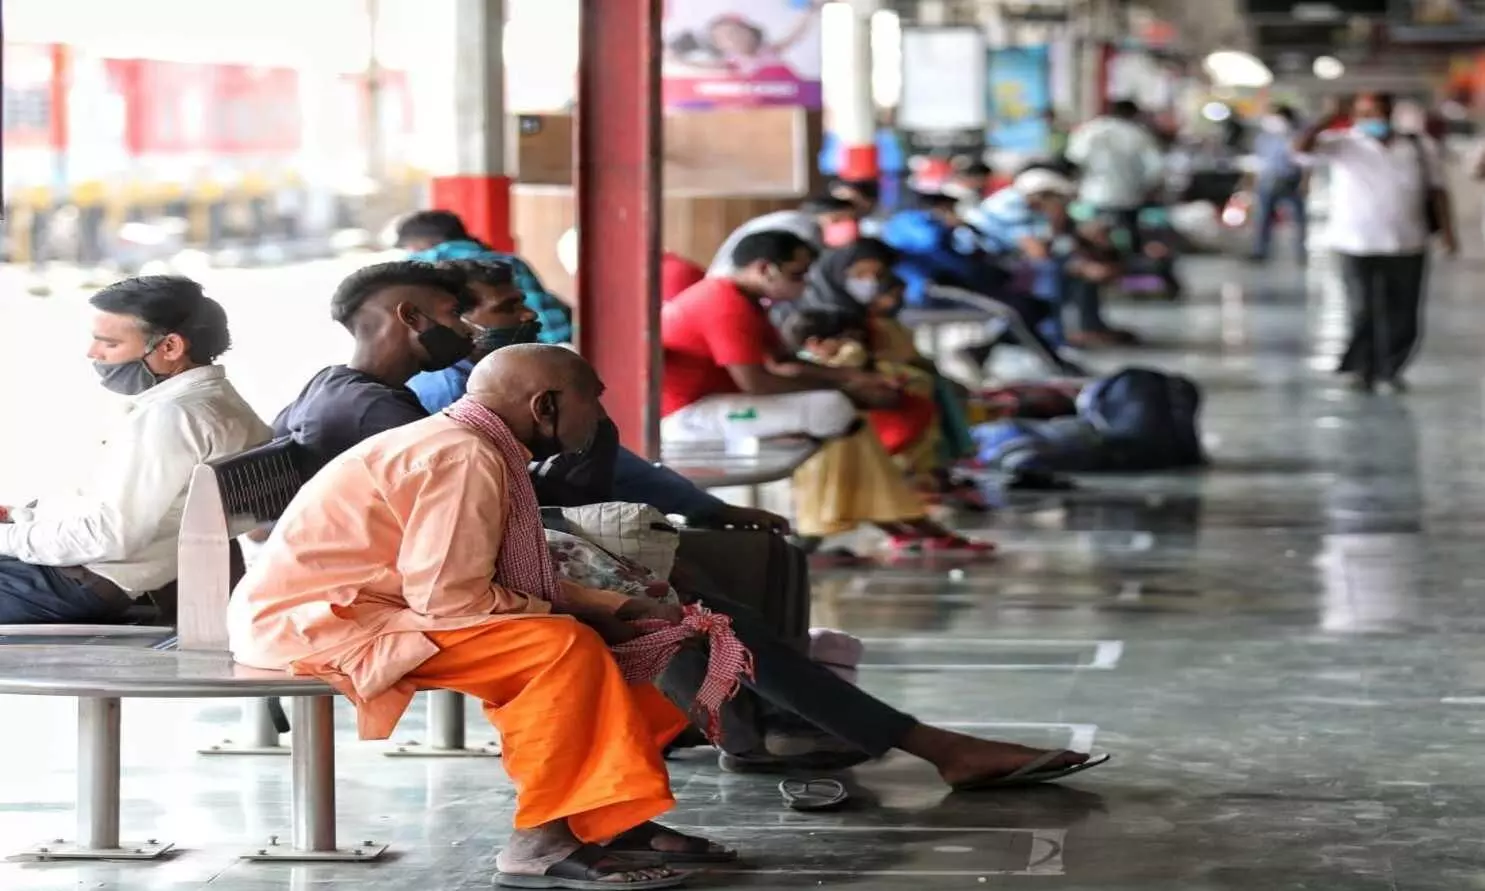 लखनऊ के चारबाग रेलवे स्टेशन पर ट्रेन का इंतजार करते प्रवासी मजदूर